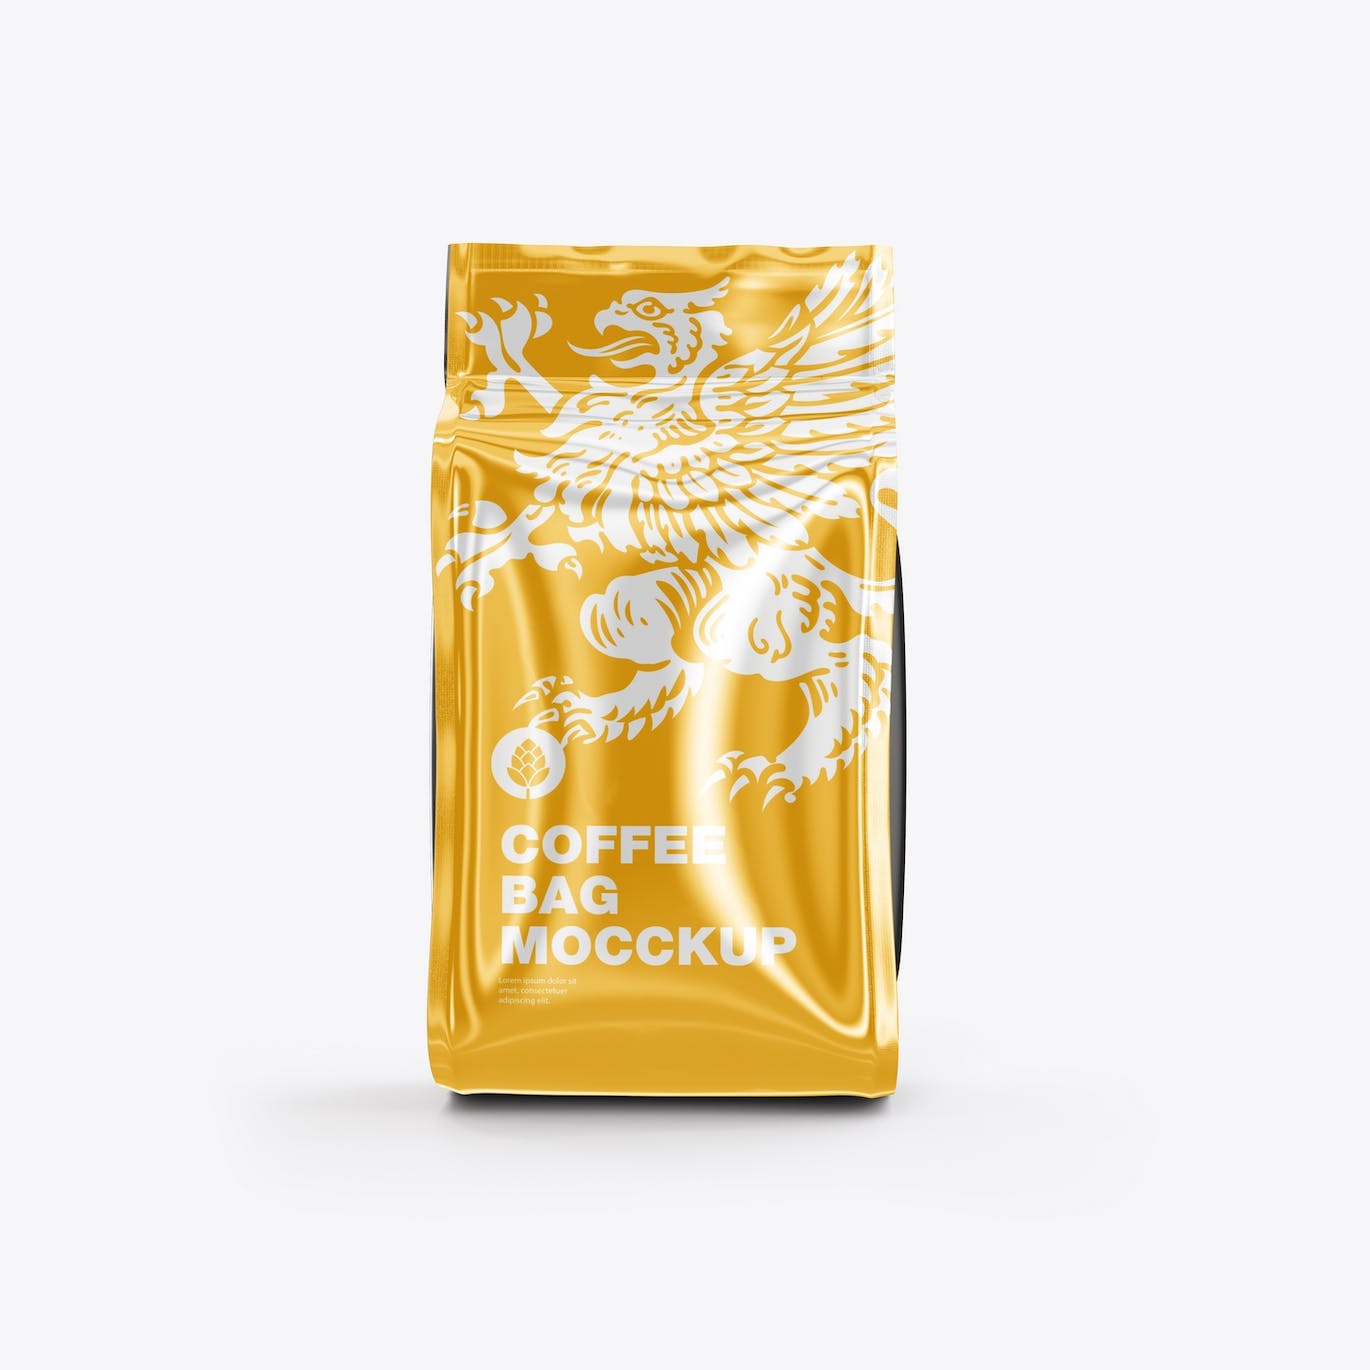 光滑的塑料纸咖啡袋包装设计样机图 Set Glossy Plastic Paper Coffee Bag Mockup 样机素材 第8张